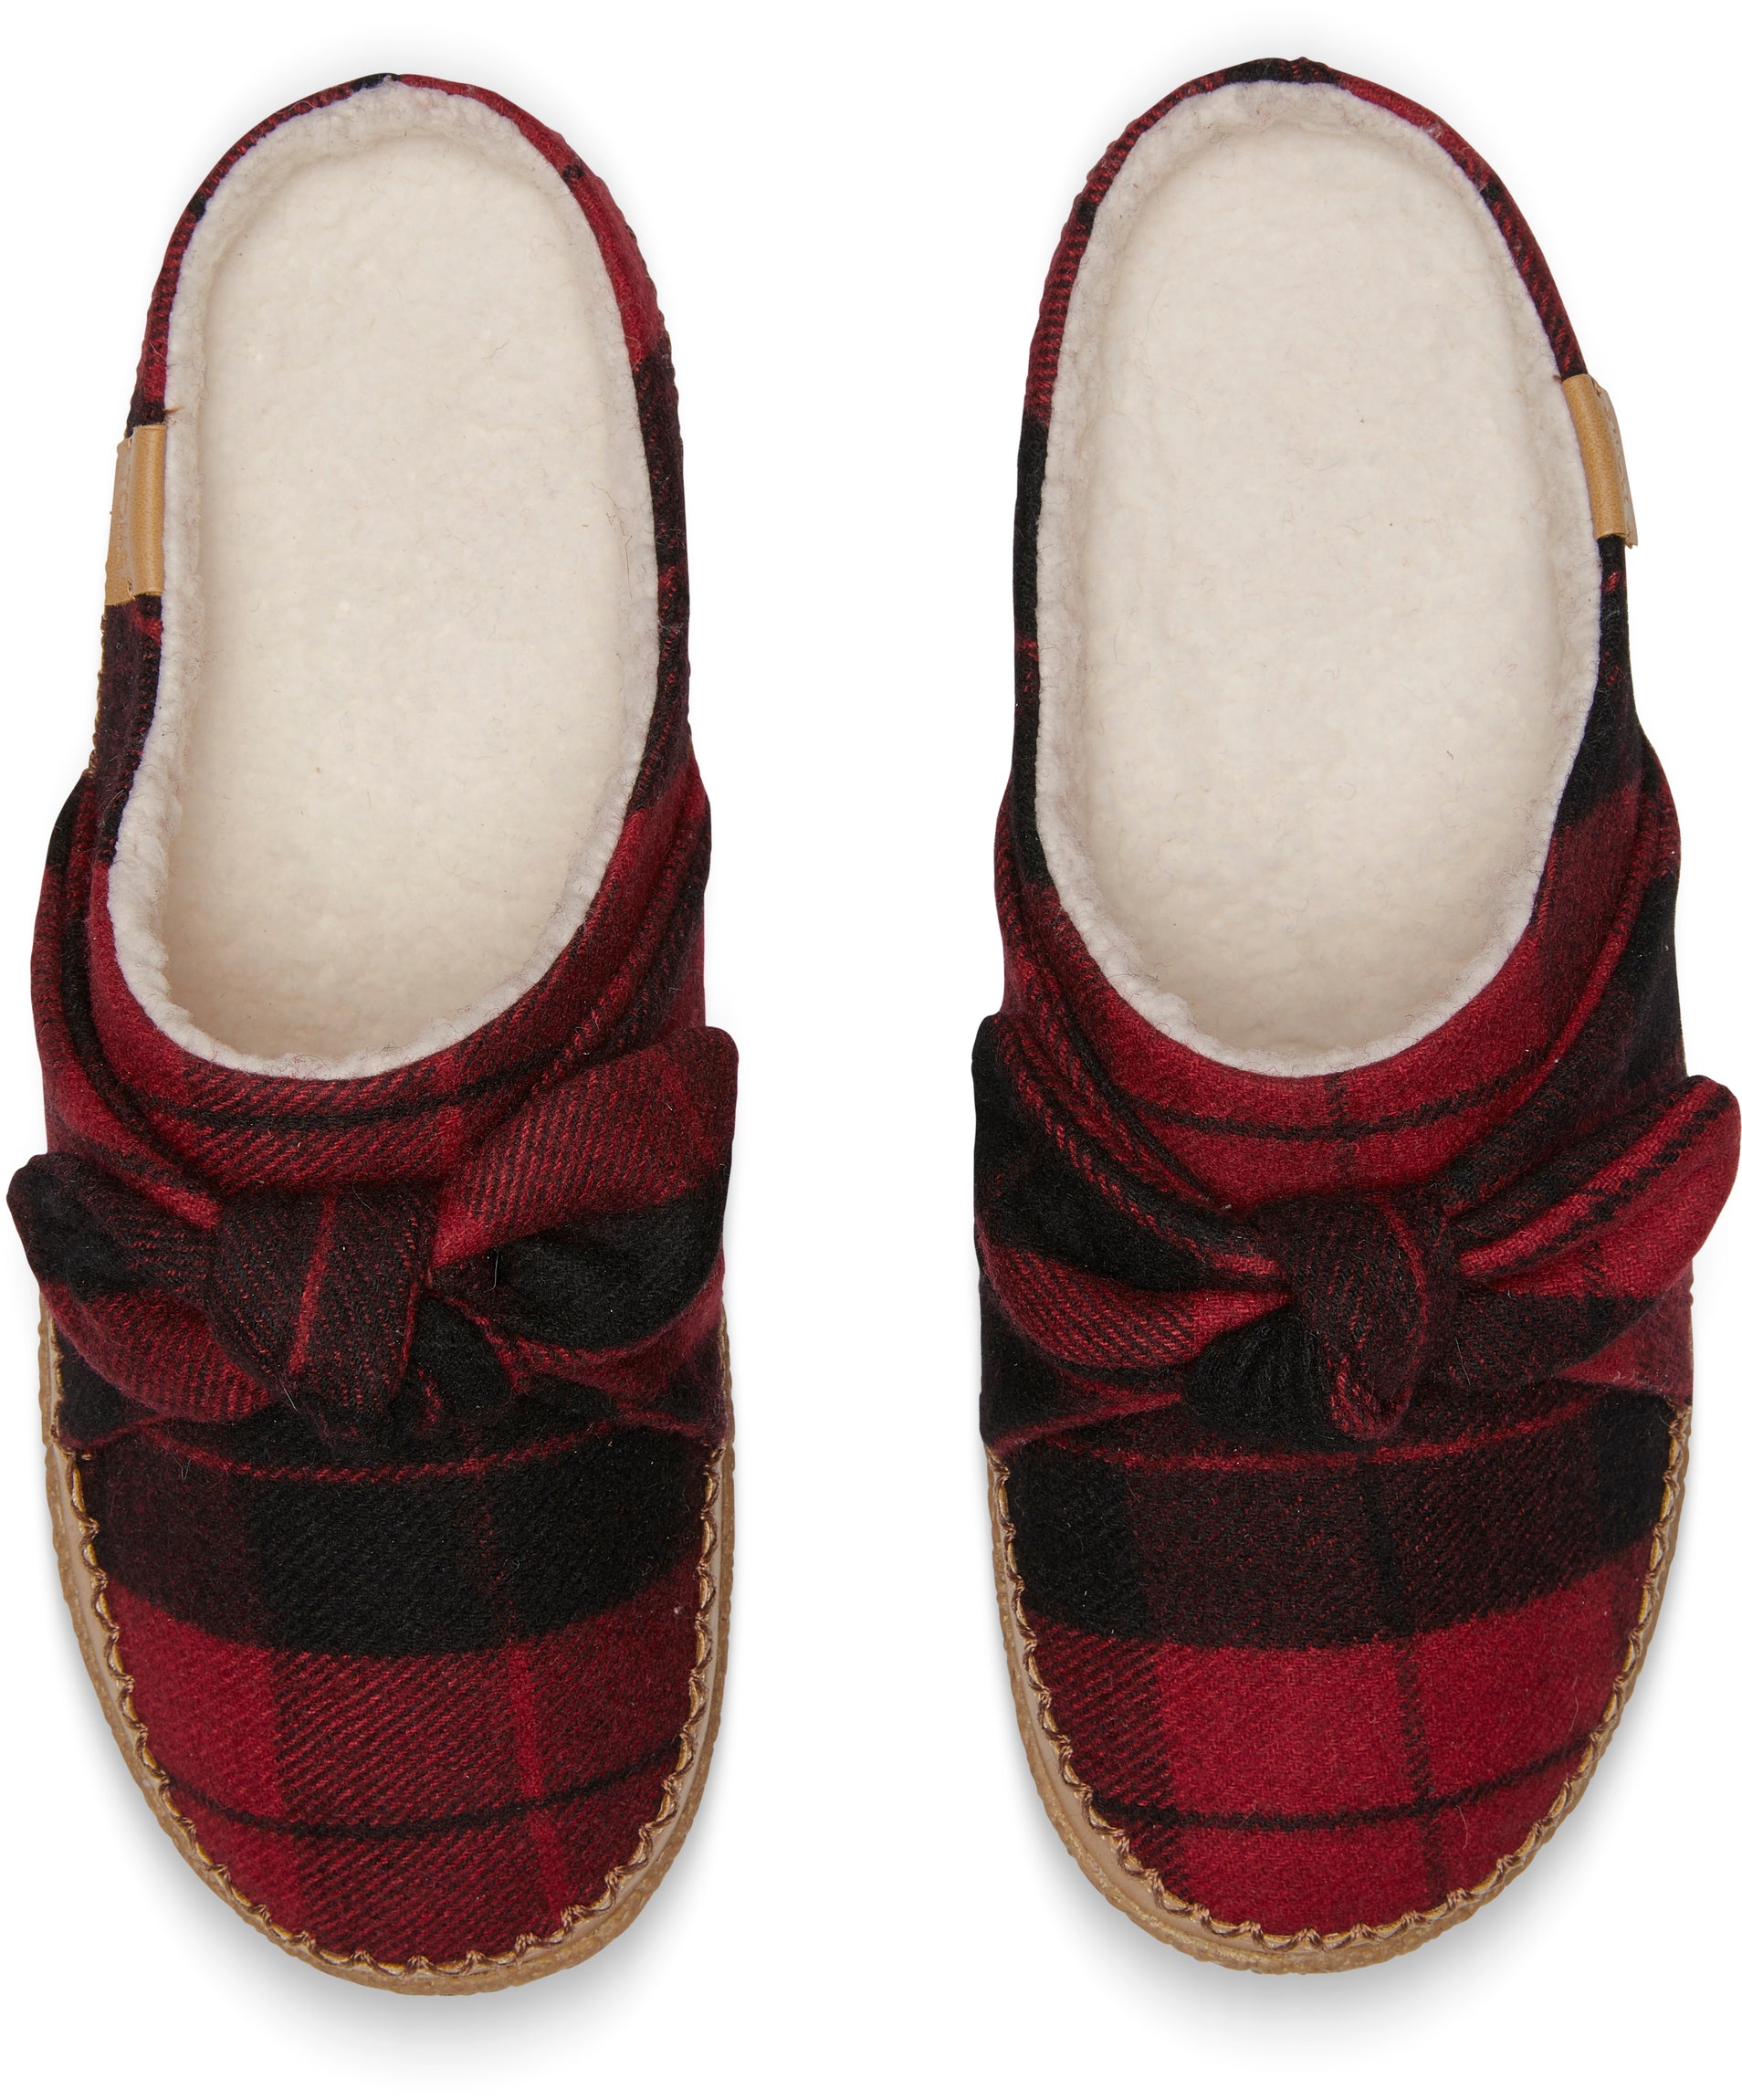 Dámské červené pantofle TOMS Bow Ivy